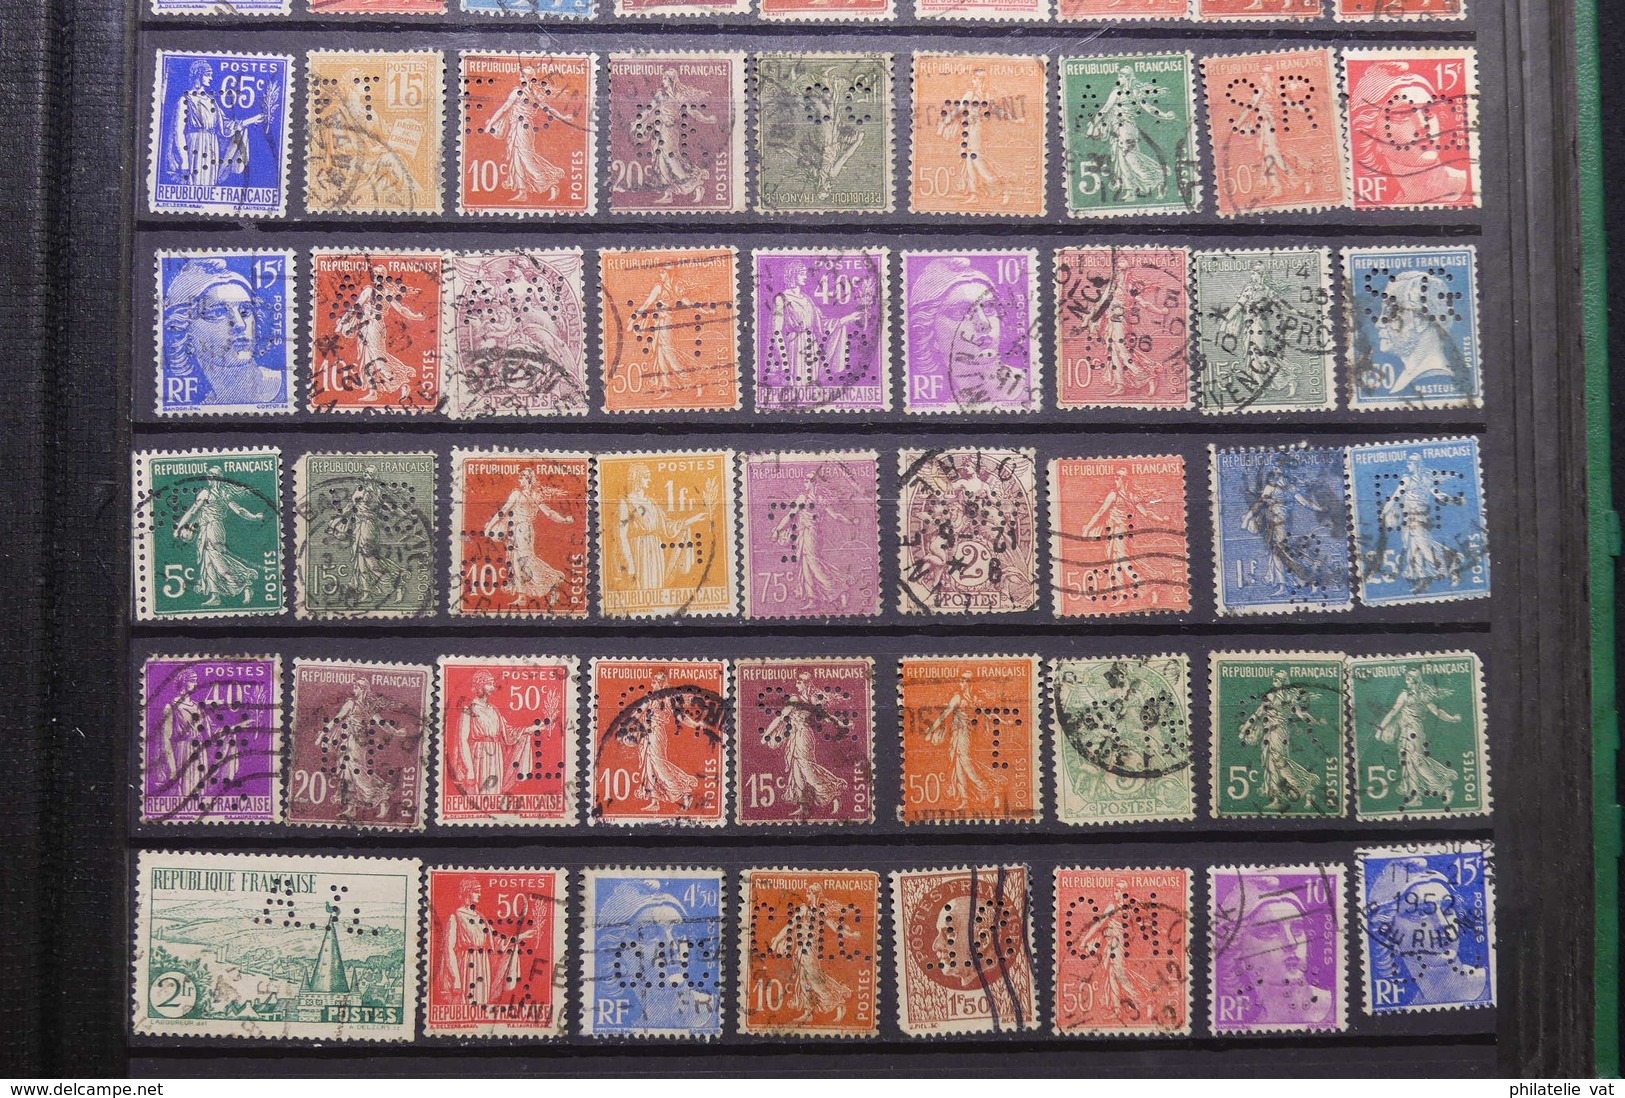 FRANCE - Album de timbres perforés - Plus de 1.000 pièces - A étudier - Nature - P 22662